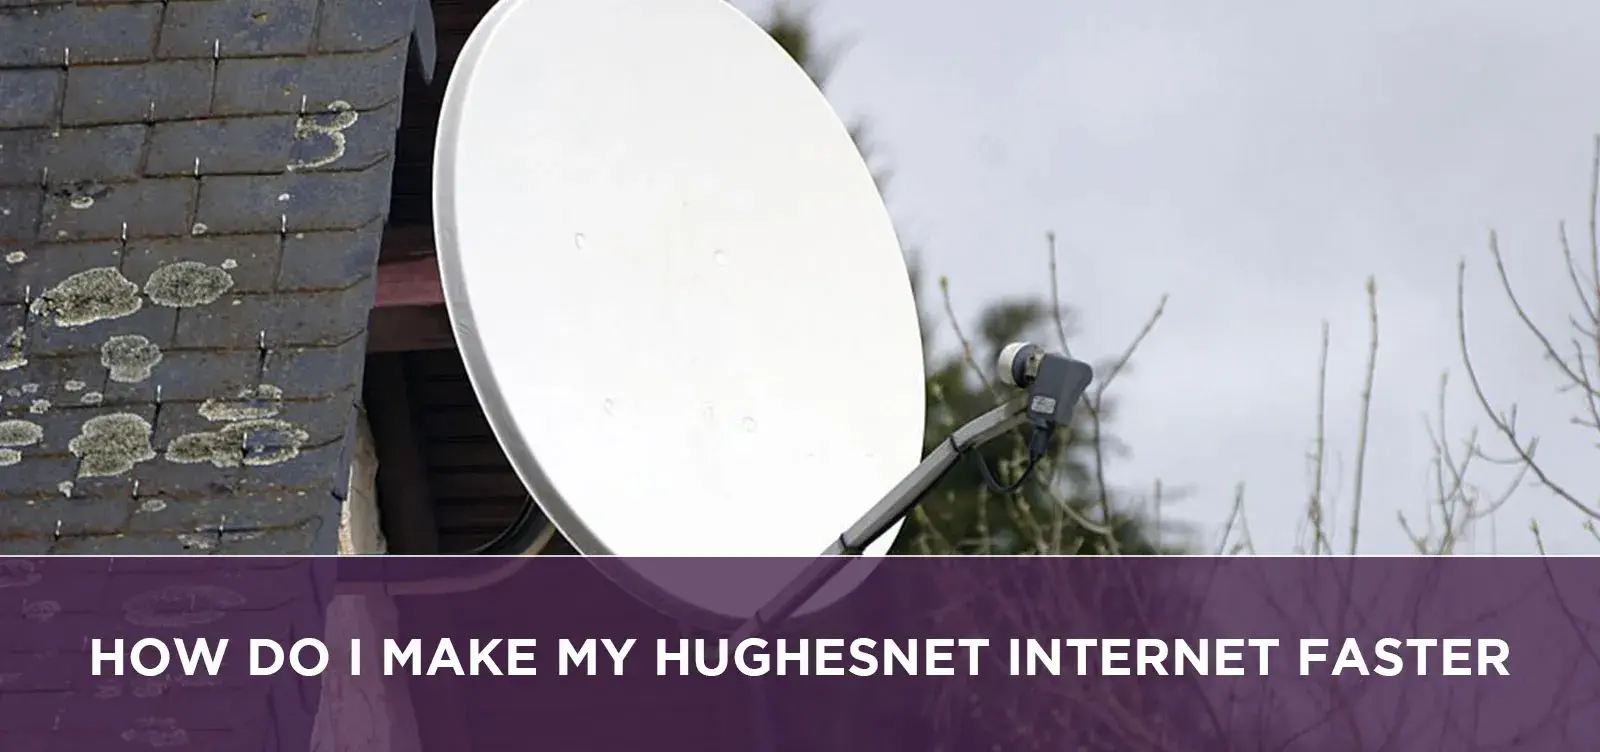 How Do I Make My Hughesnet Internet Faster?